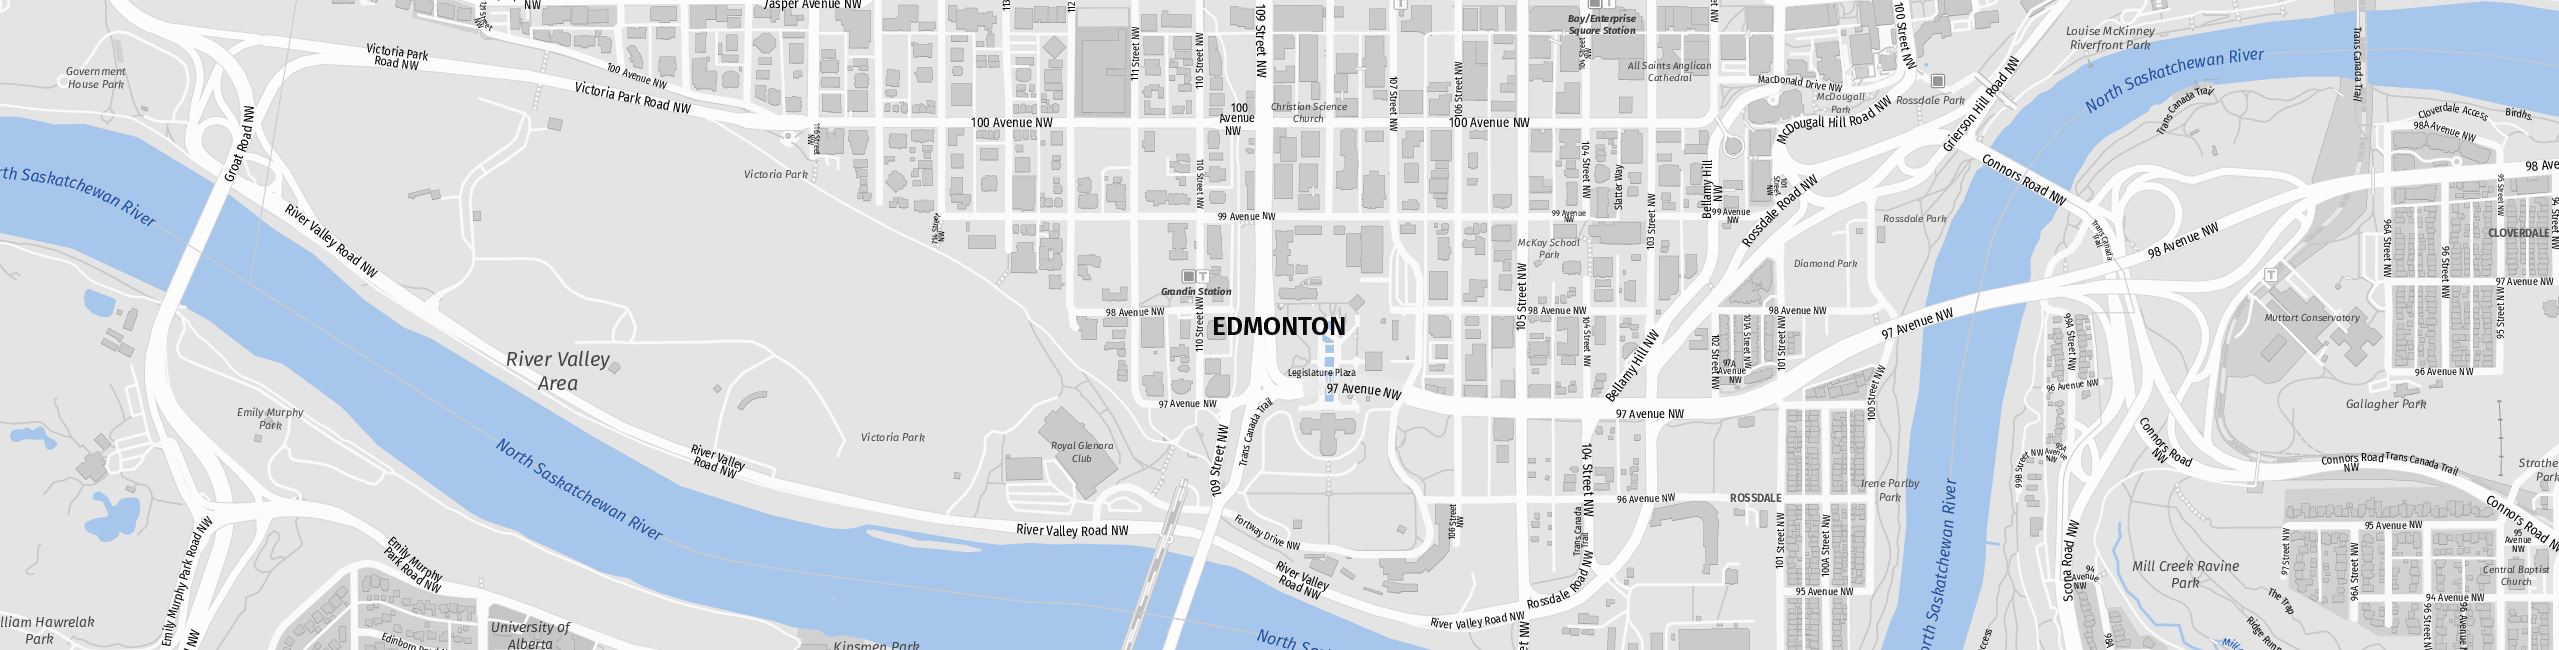 Stadtplan Edmonton zum Downloaden.